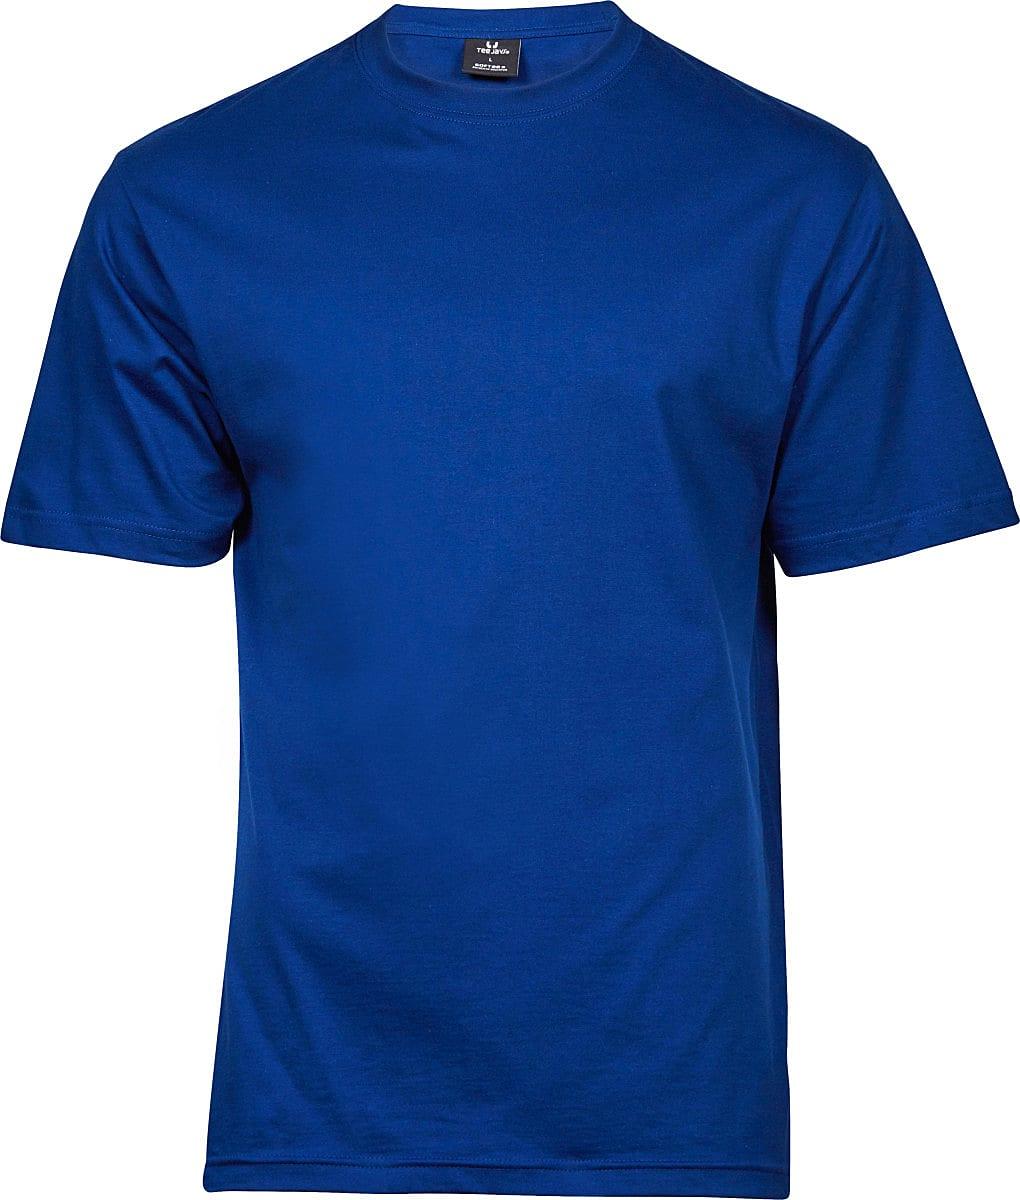 Tee Jays Mens Sof-Tee T-Shirt, TJ8000